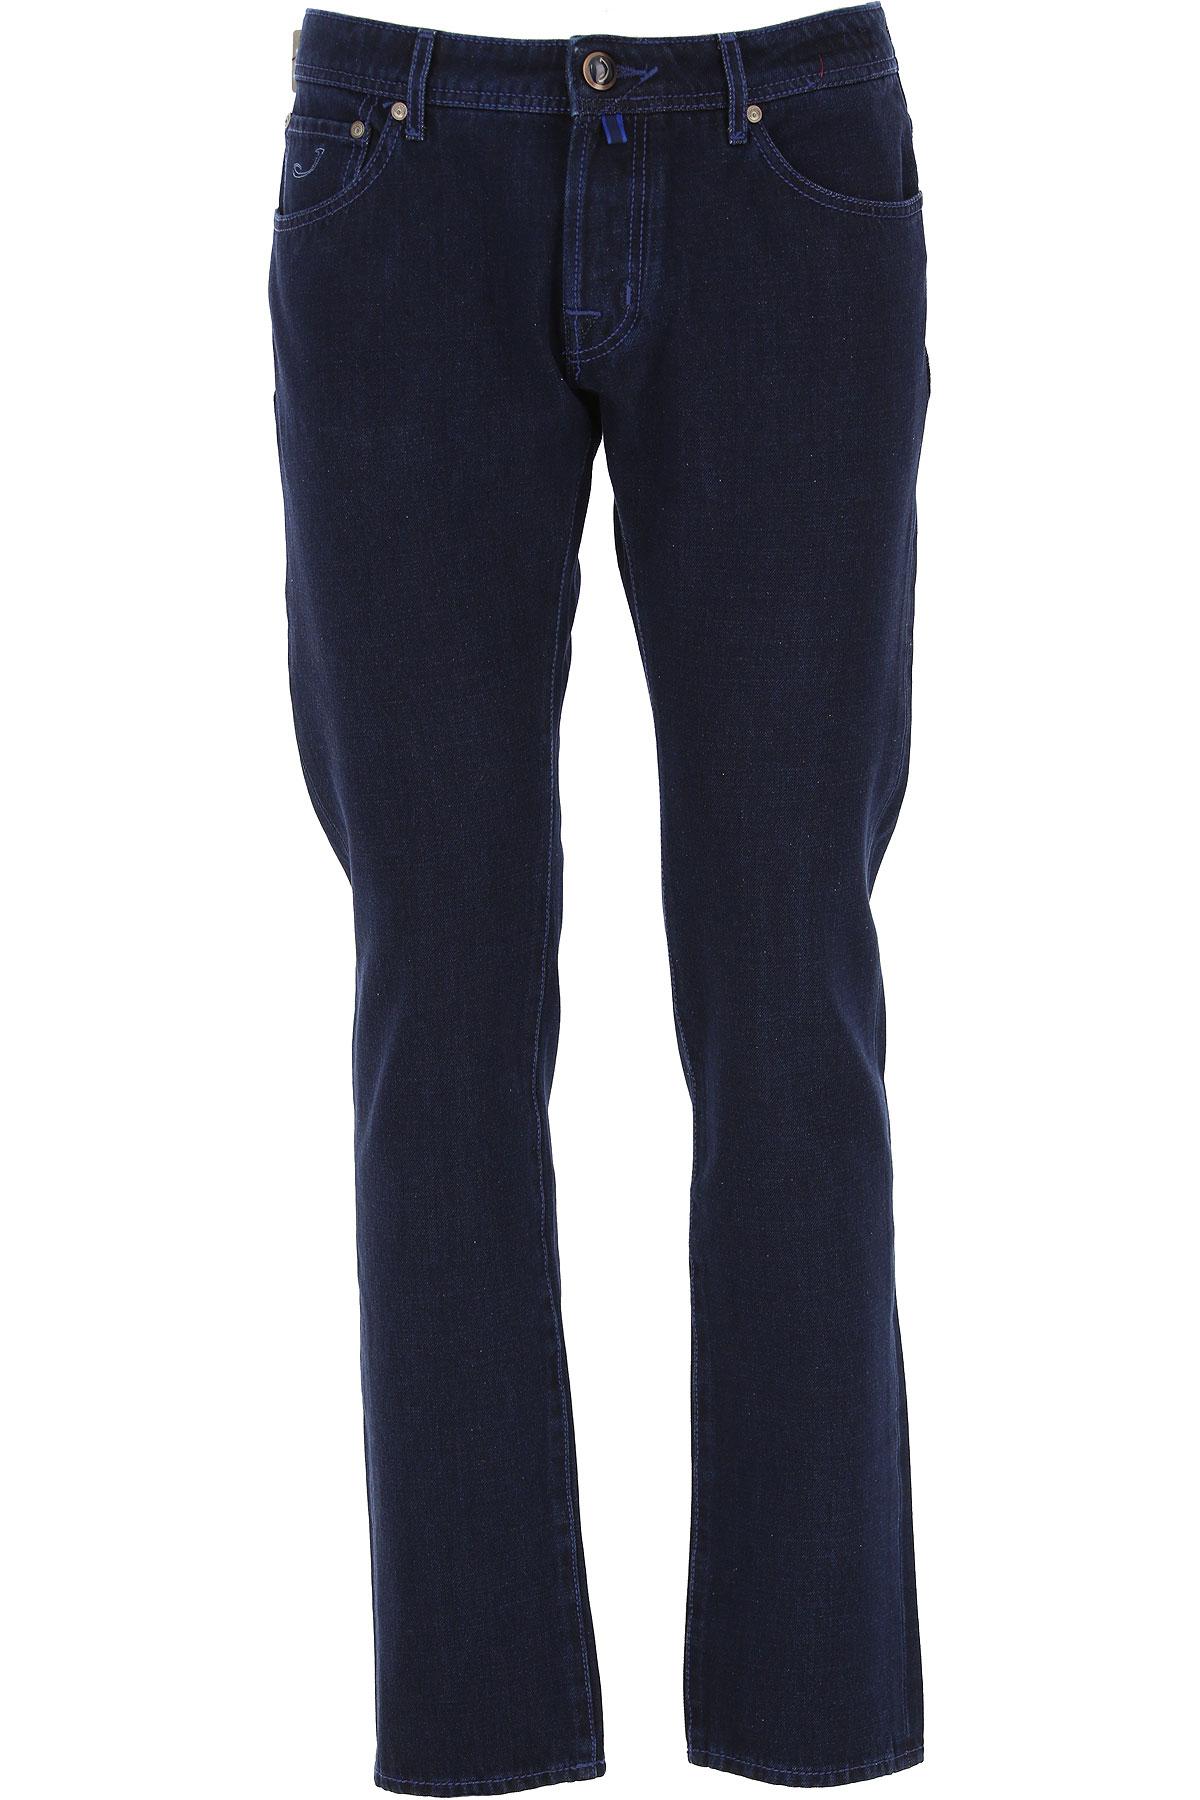 Jacob Cohen Denim Jeans On Sale In Outlet in Denim Blue (Blue) for Men ...